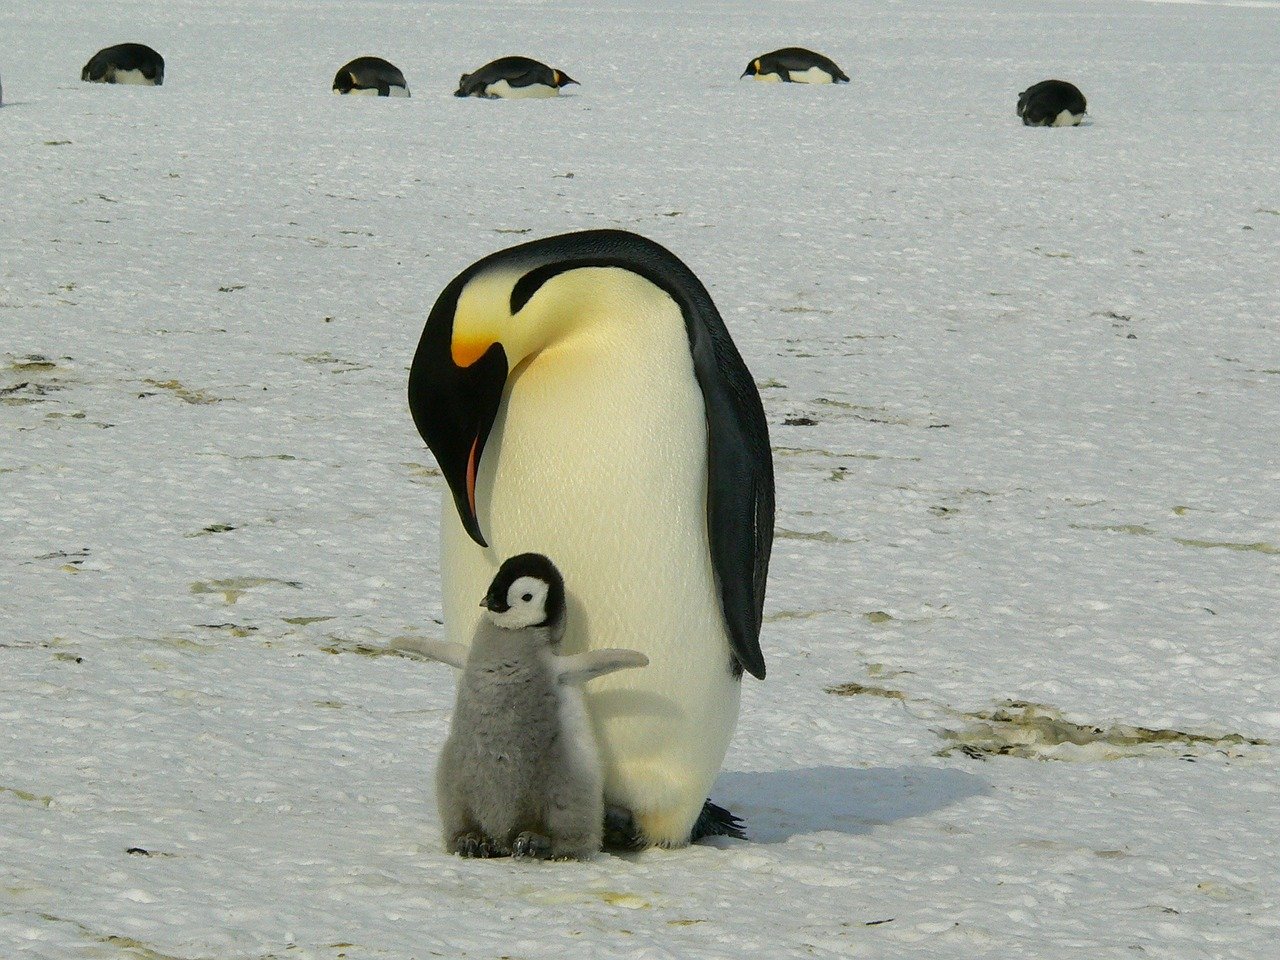 Penguins Emperor Penguins Baby  - MemoryCatcher / Pixabay